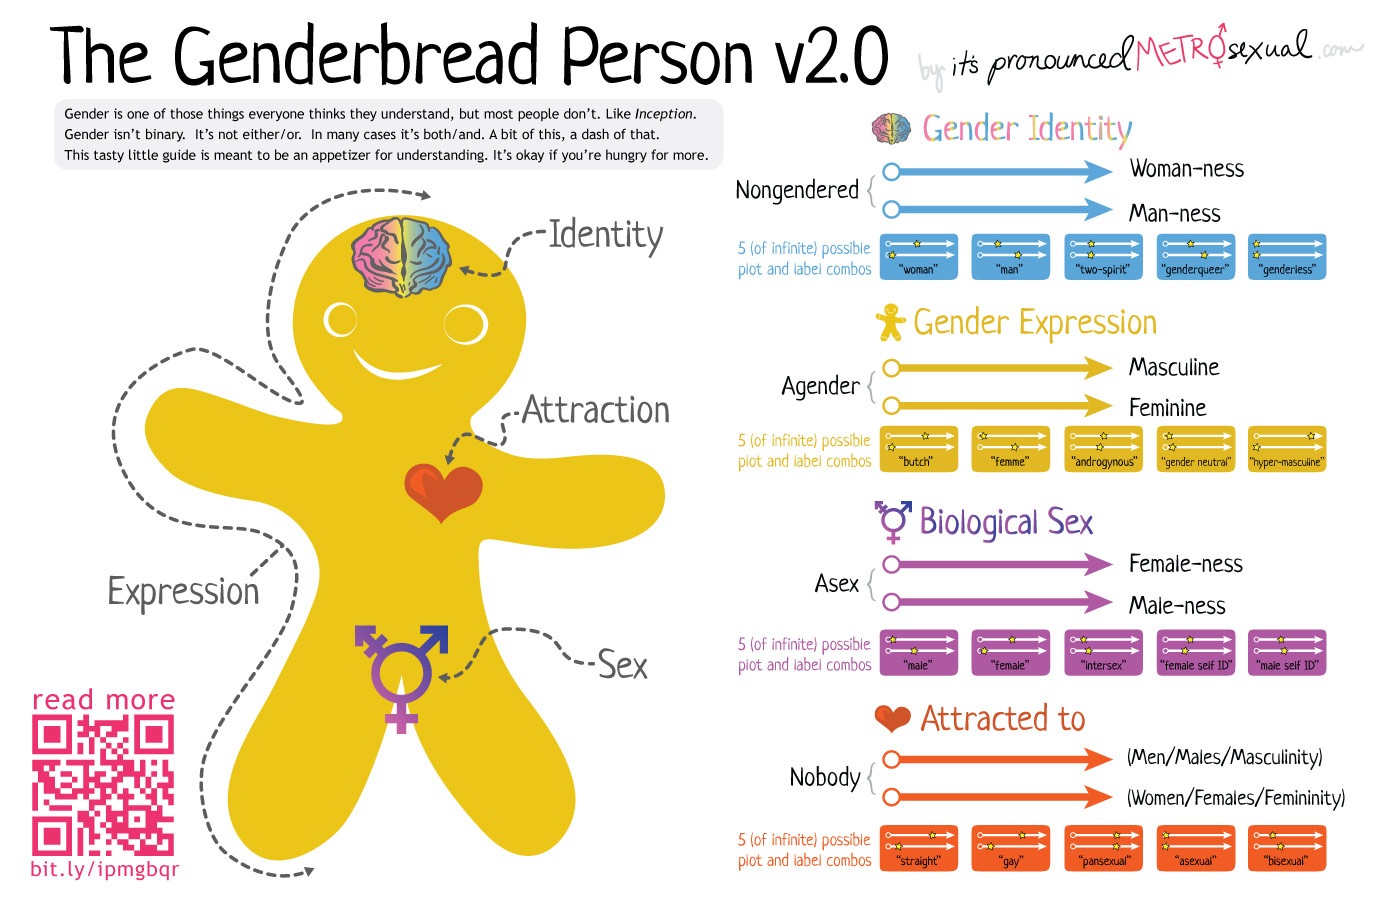 The Genderbread Person v2.1